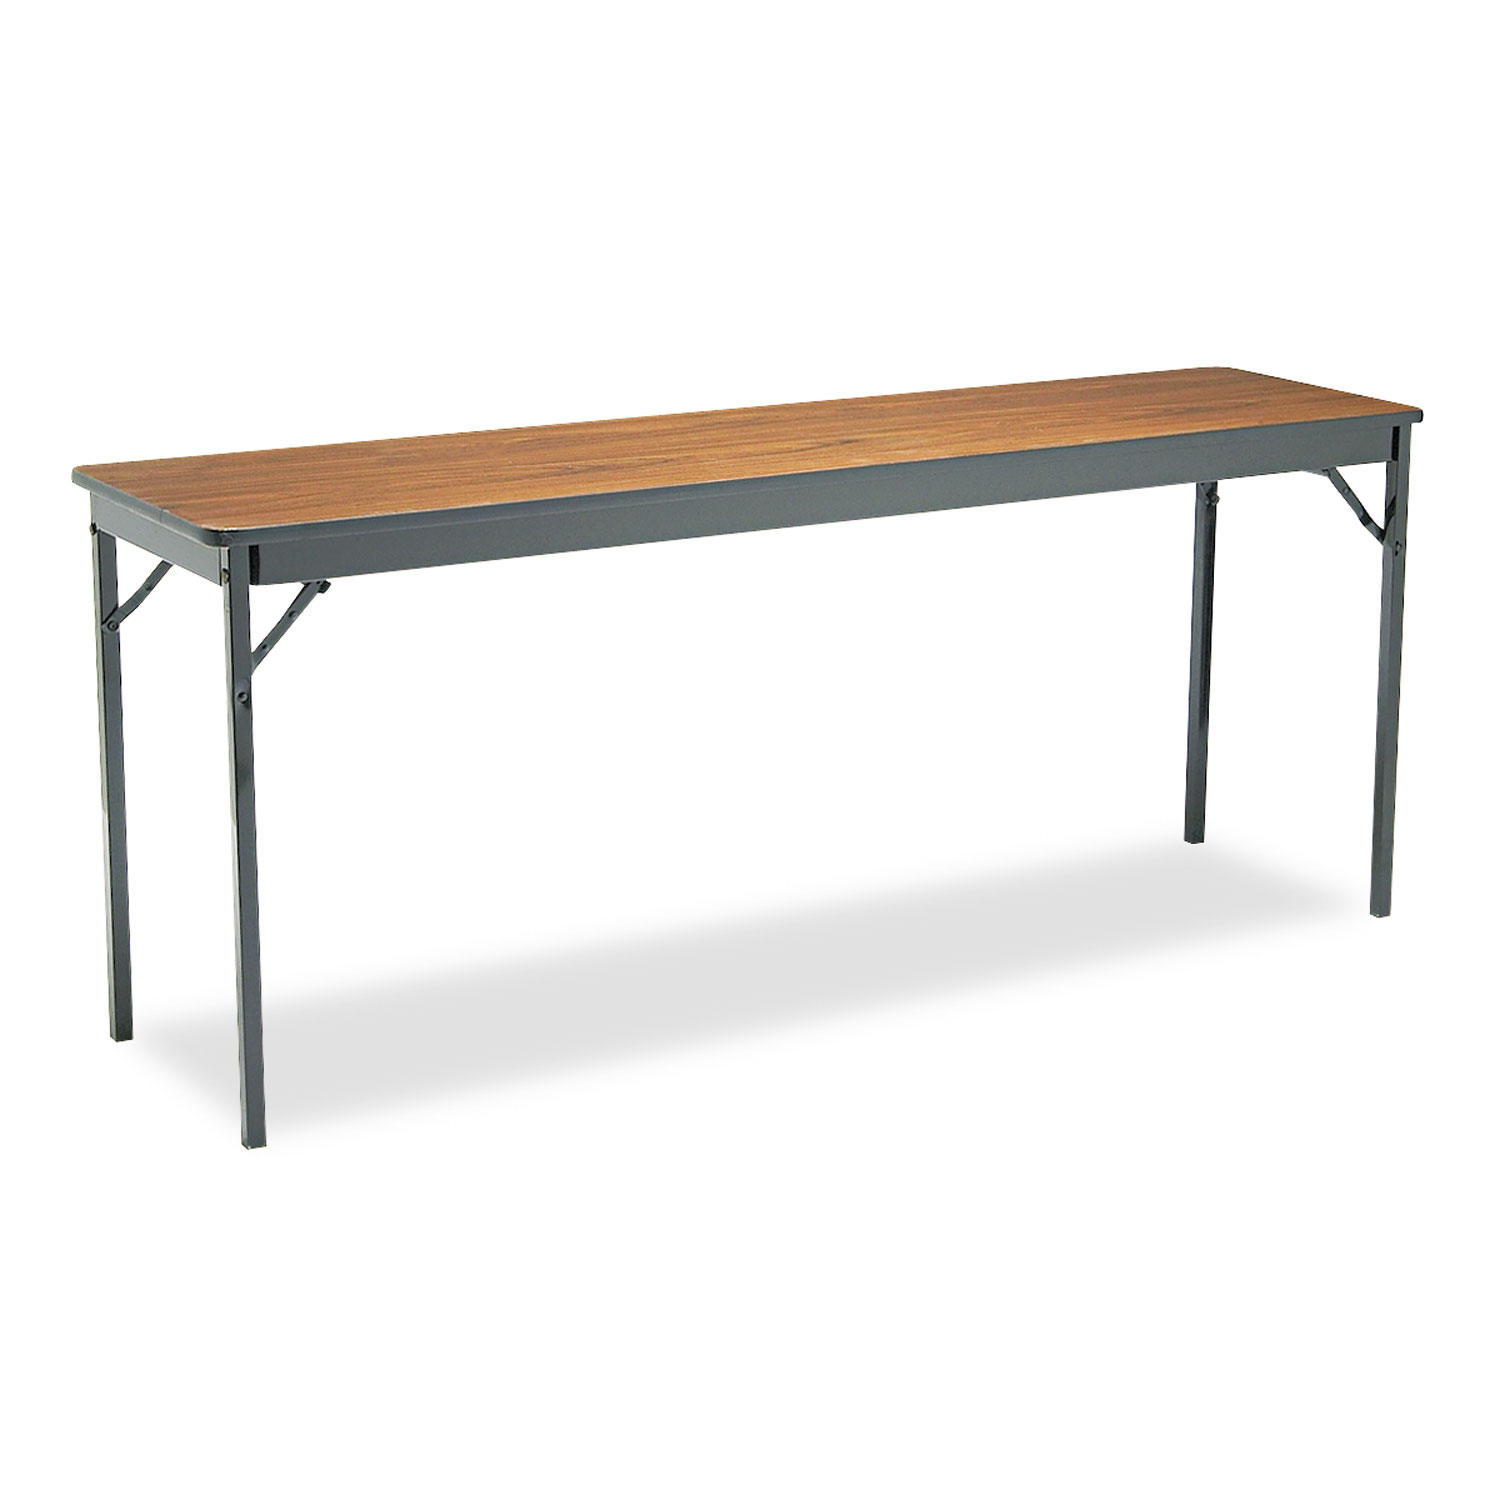  Barricks CL1872-WA Special Size Folding Table, Rectangular, 72w x 18d x 30h, Walnut/Black (BRKCL1872WA) 